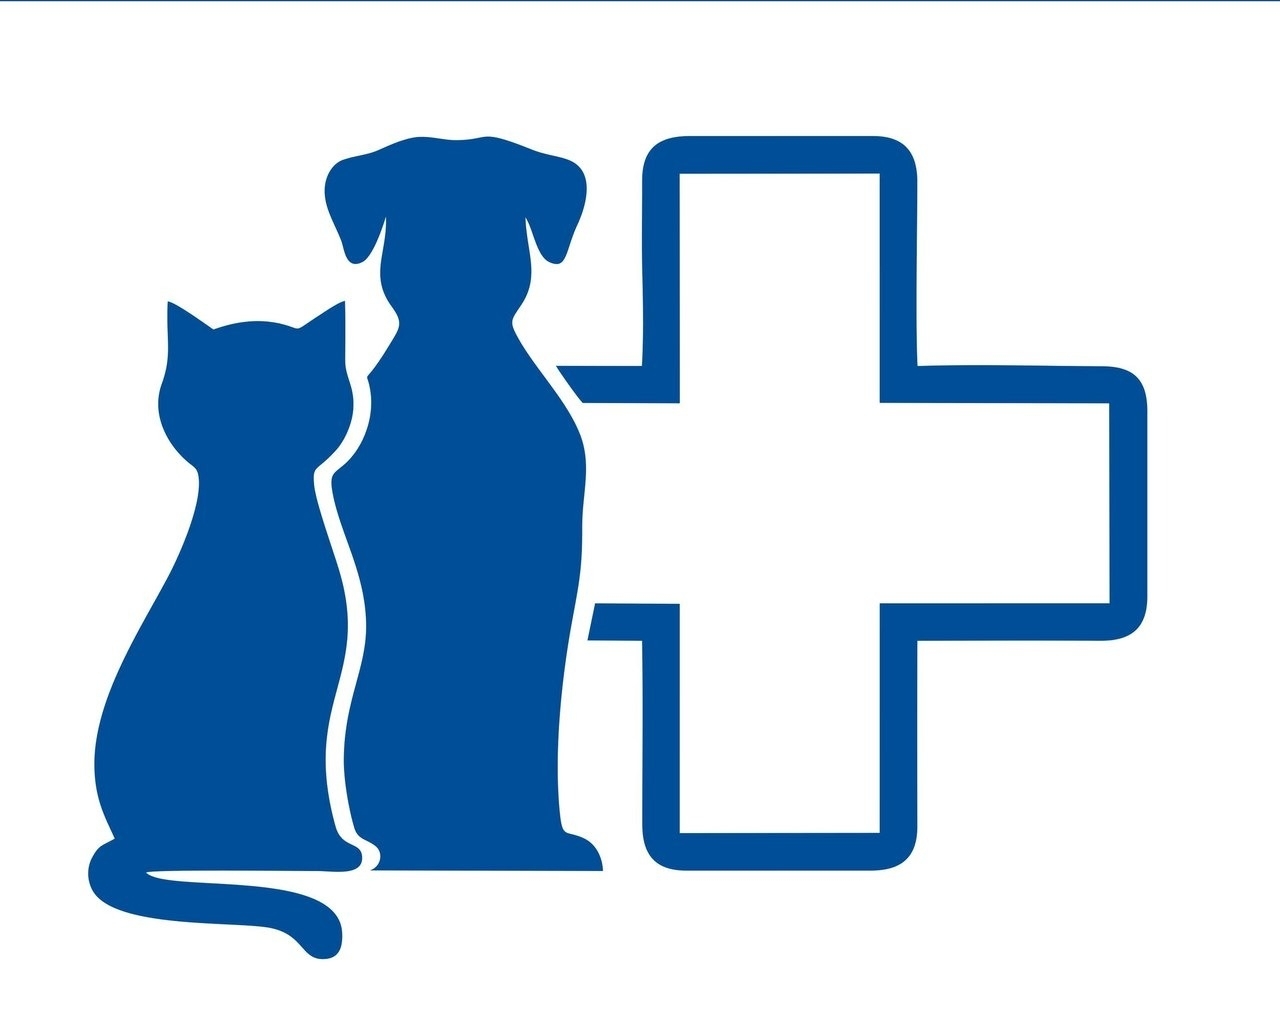 Эмблема ветеринарной клиники